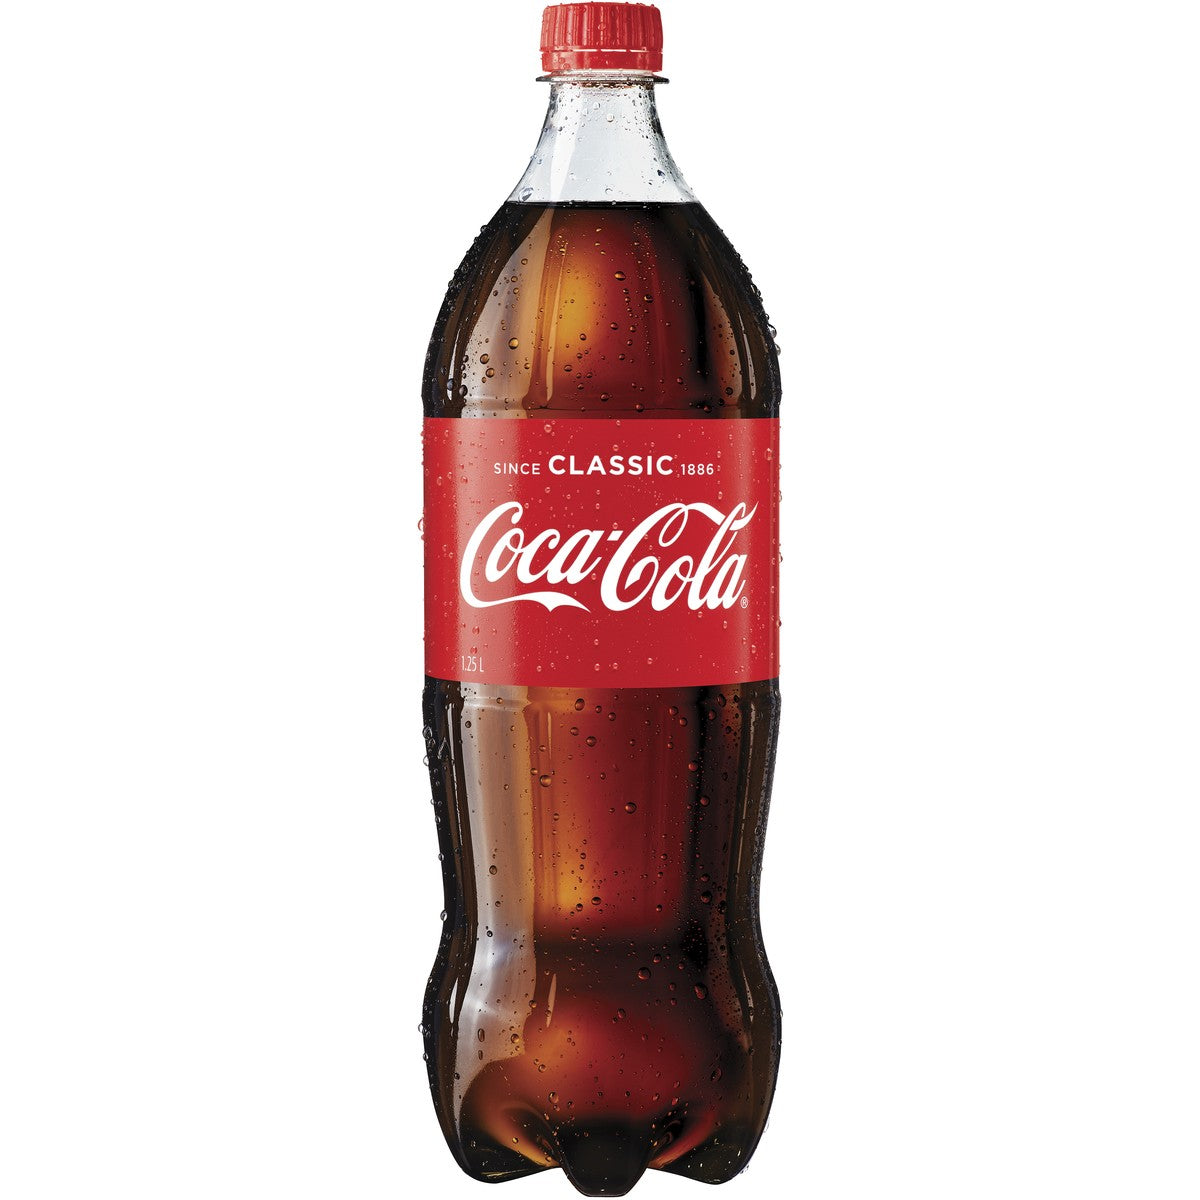 Coca Cola Coke 1.25L